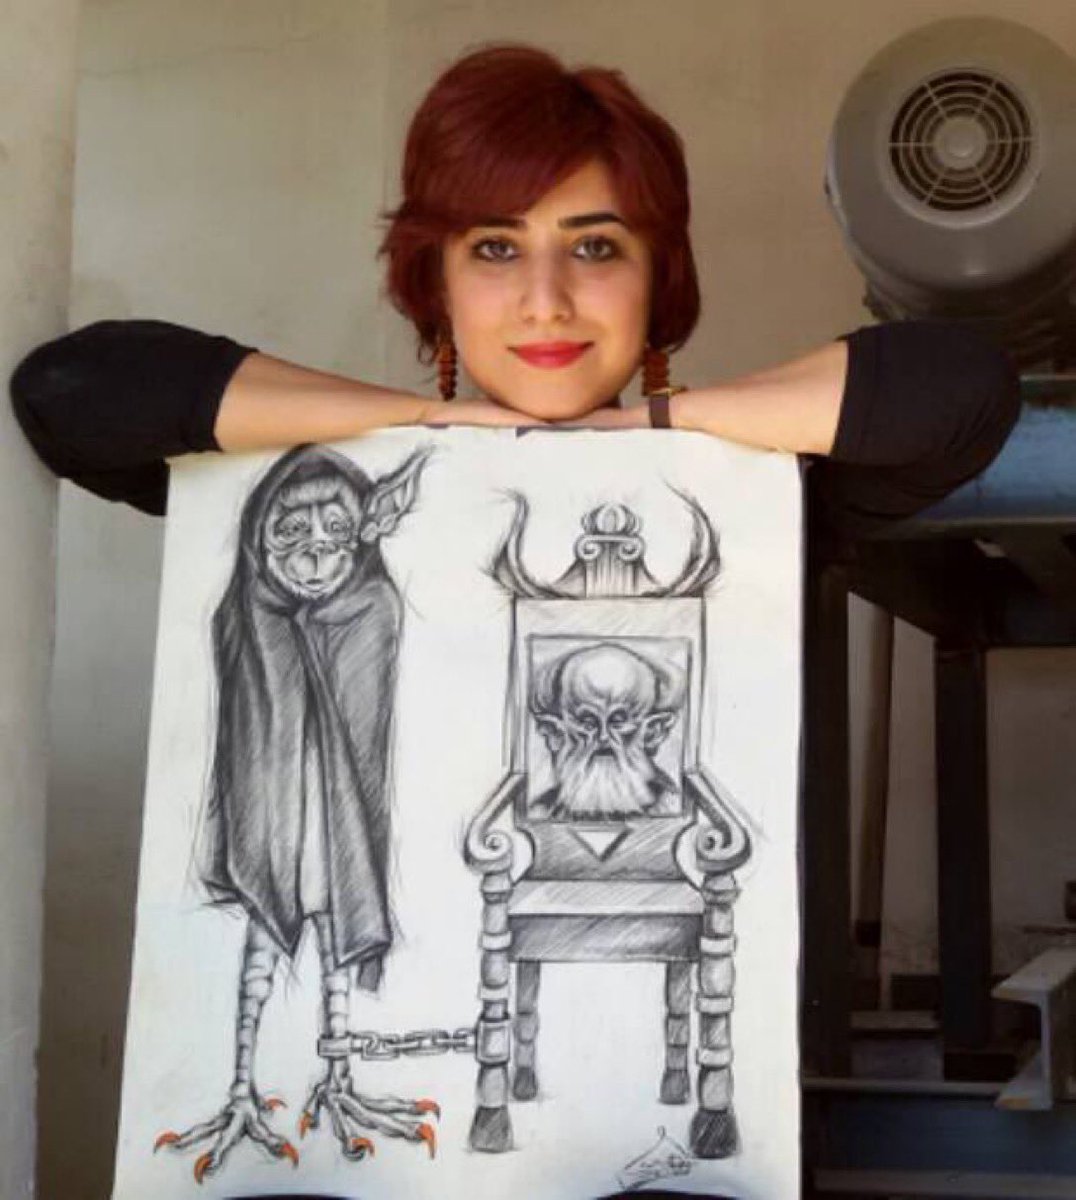 #Iran:
Dit is #AtenaFarghdani, een schilder, karikaturist &voormalig politiek gevangene.
Ze was gisteren gedagvaard voor de rechtbank v Evin.
Ze werd daar gearresteerd, bevestigt zijn advocaat M. Moghimi
Ze is opgesloten in de Evin-gevangenis.
Wees svp haar stem
#WomanLifeFreedom